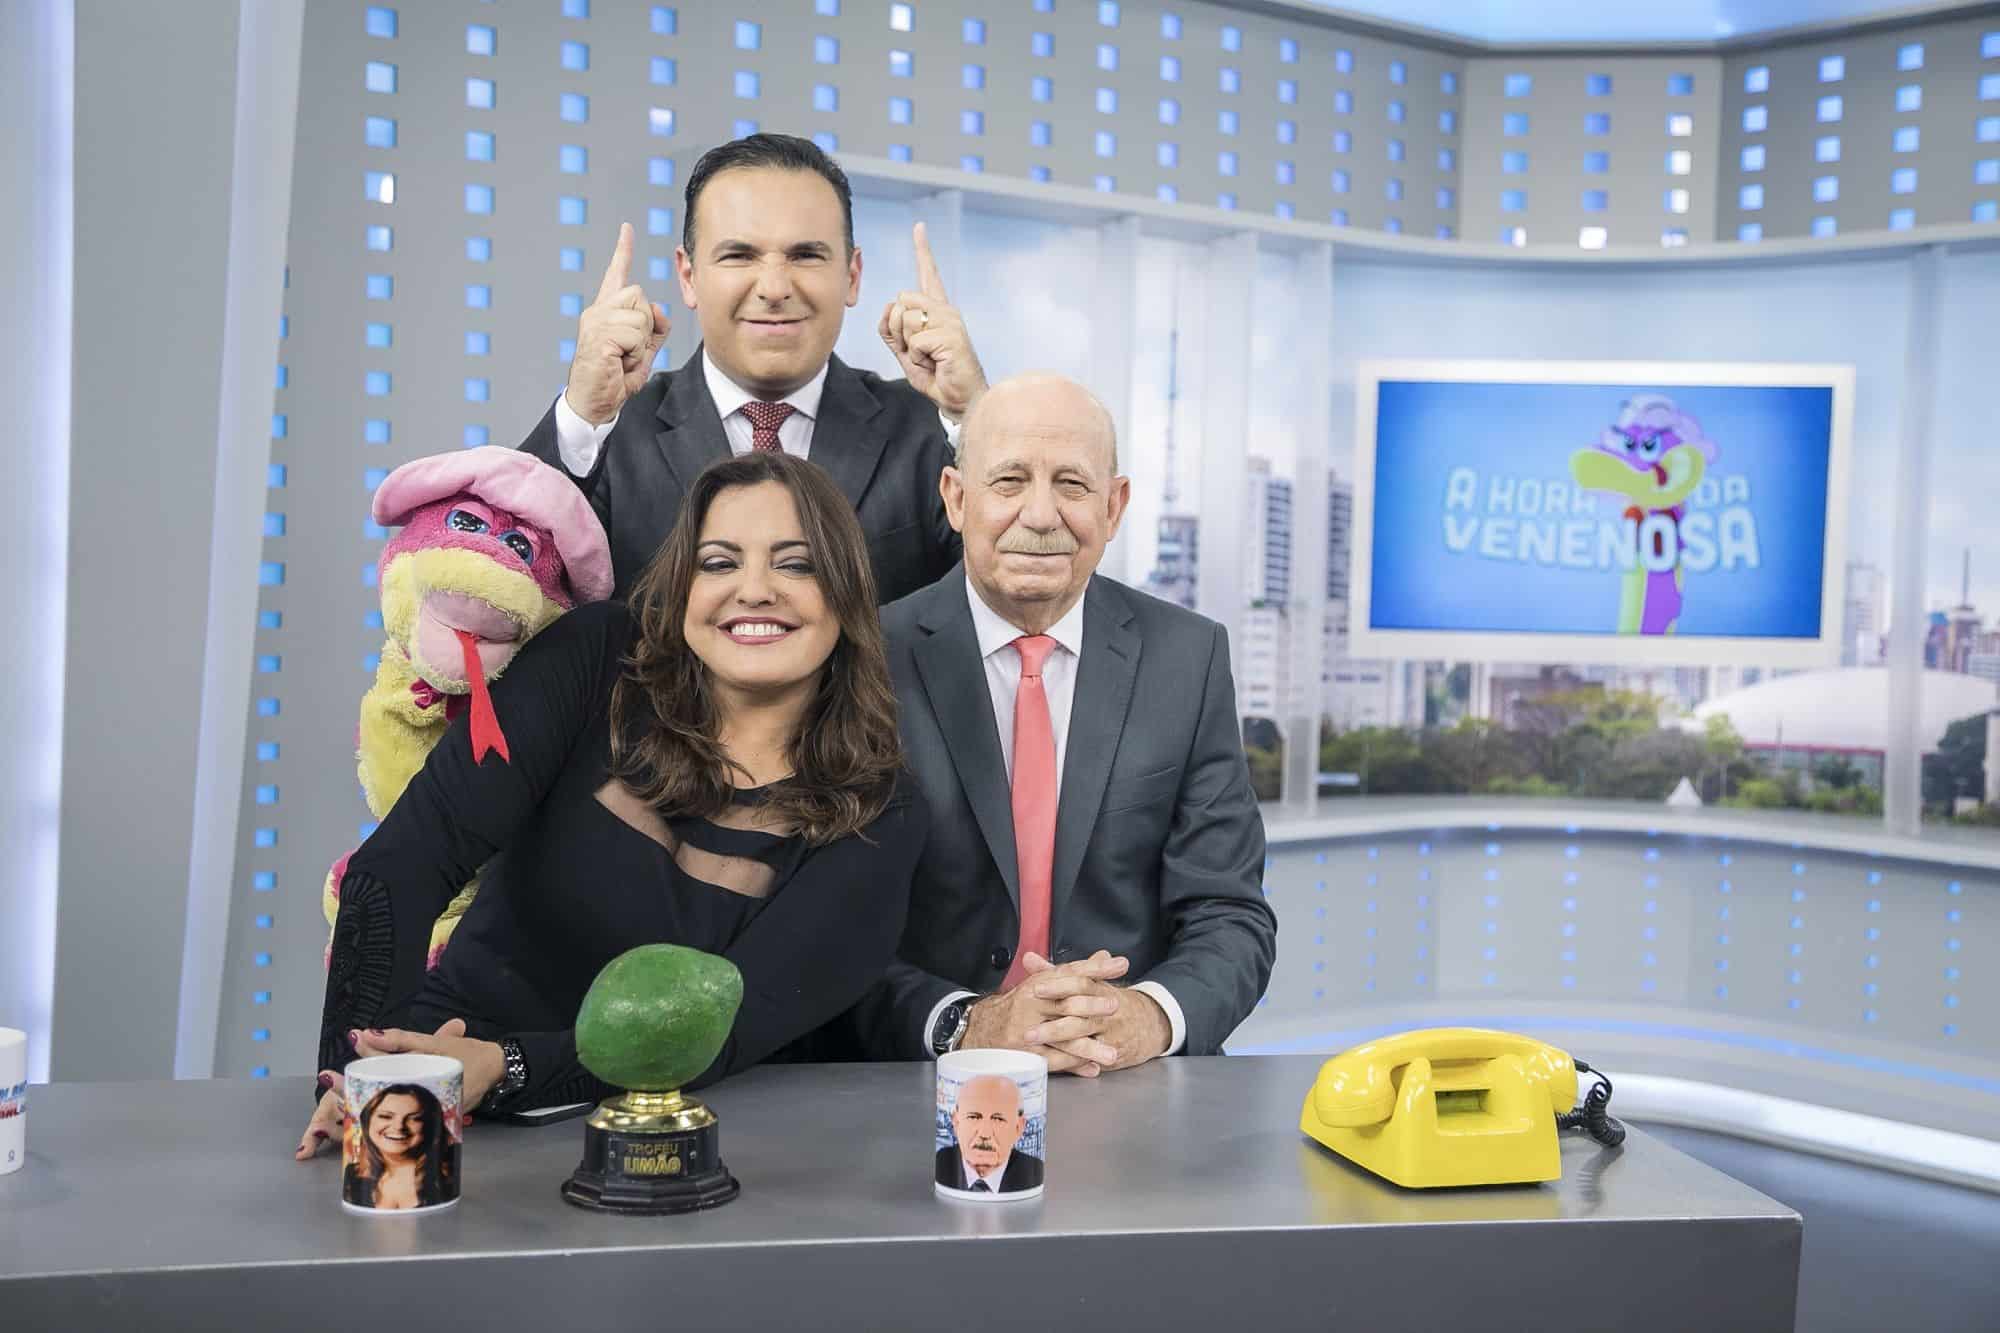 Audiência da TV: Após jejum de 5 meses, A Hora da Venenosa bate a Globo de ponta a ponta